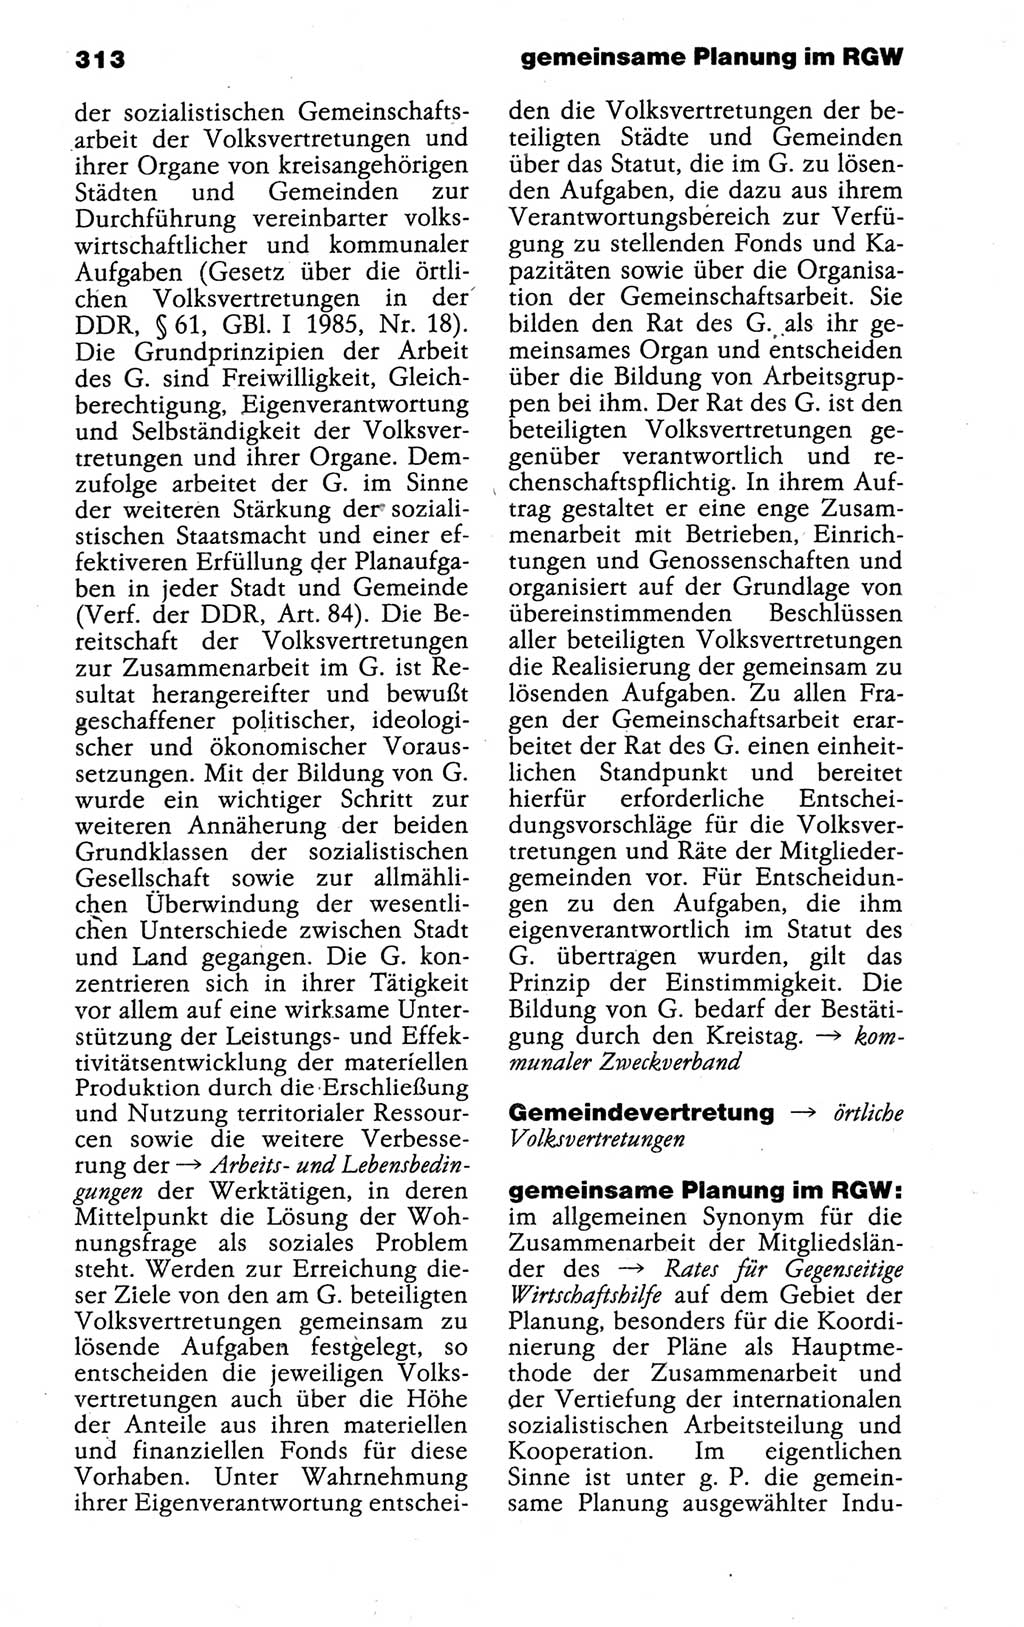 Kleines politisches Wörterbuch [Deutsche Demokratische Republik (DDR)] 1988, Seite 313 (Kl. pol. Wb. DDR 1988, S. 313)